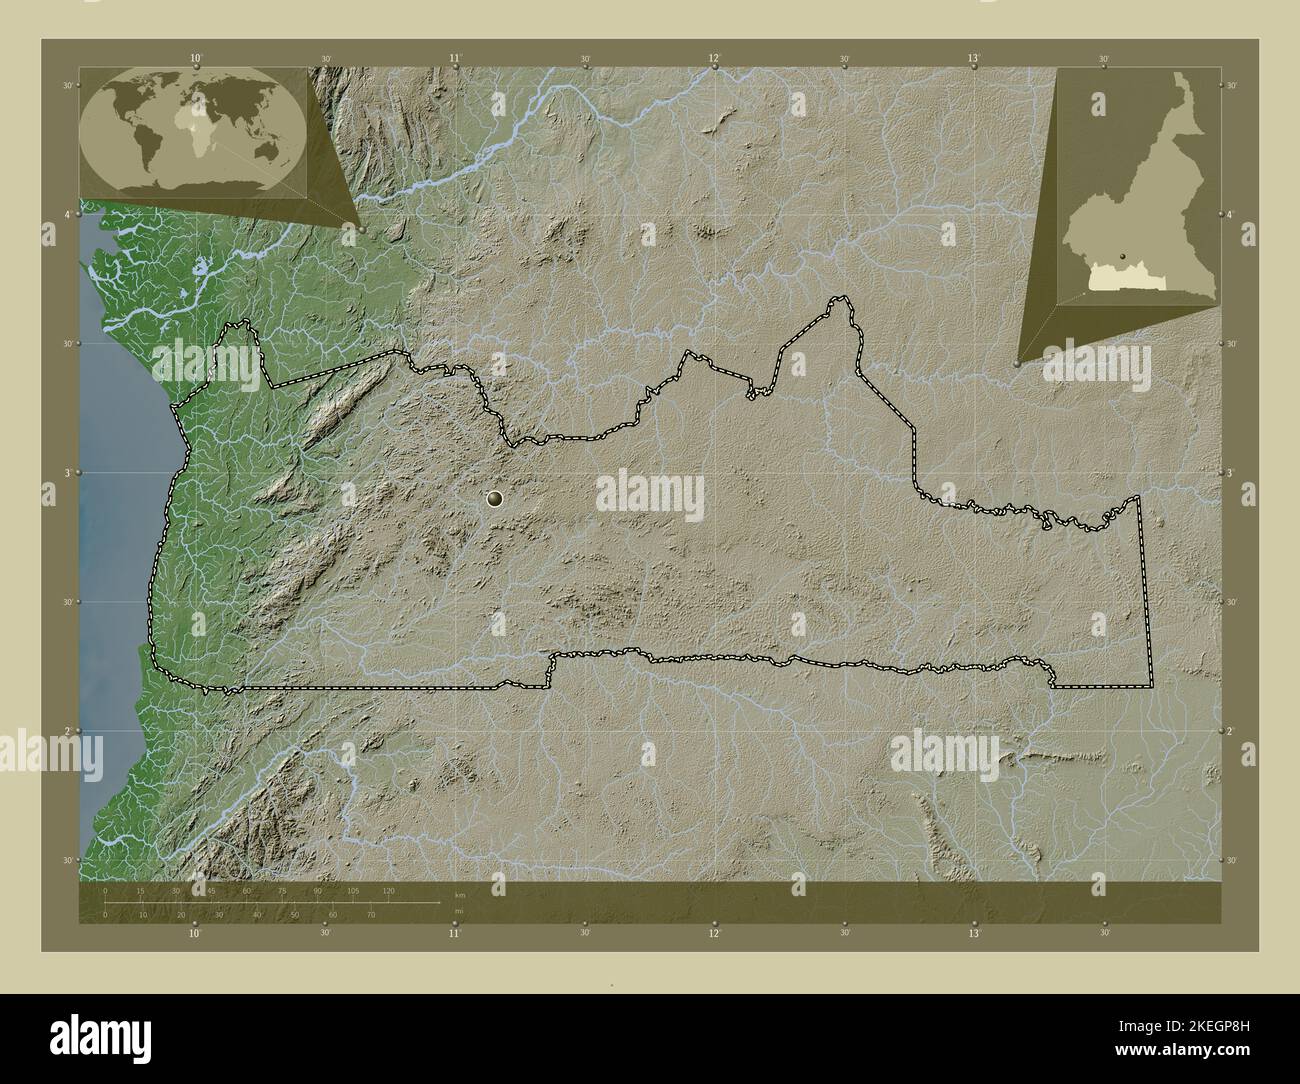 Sud, région du Cameroun. Carte d'altitude colorée en style wiki avec lacs et rivières. Cartes d'emplacement auxiliaire d'angle Banque D'Images